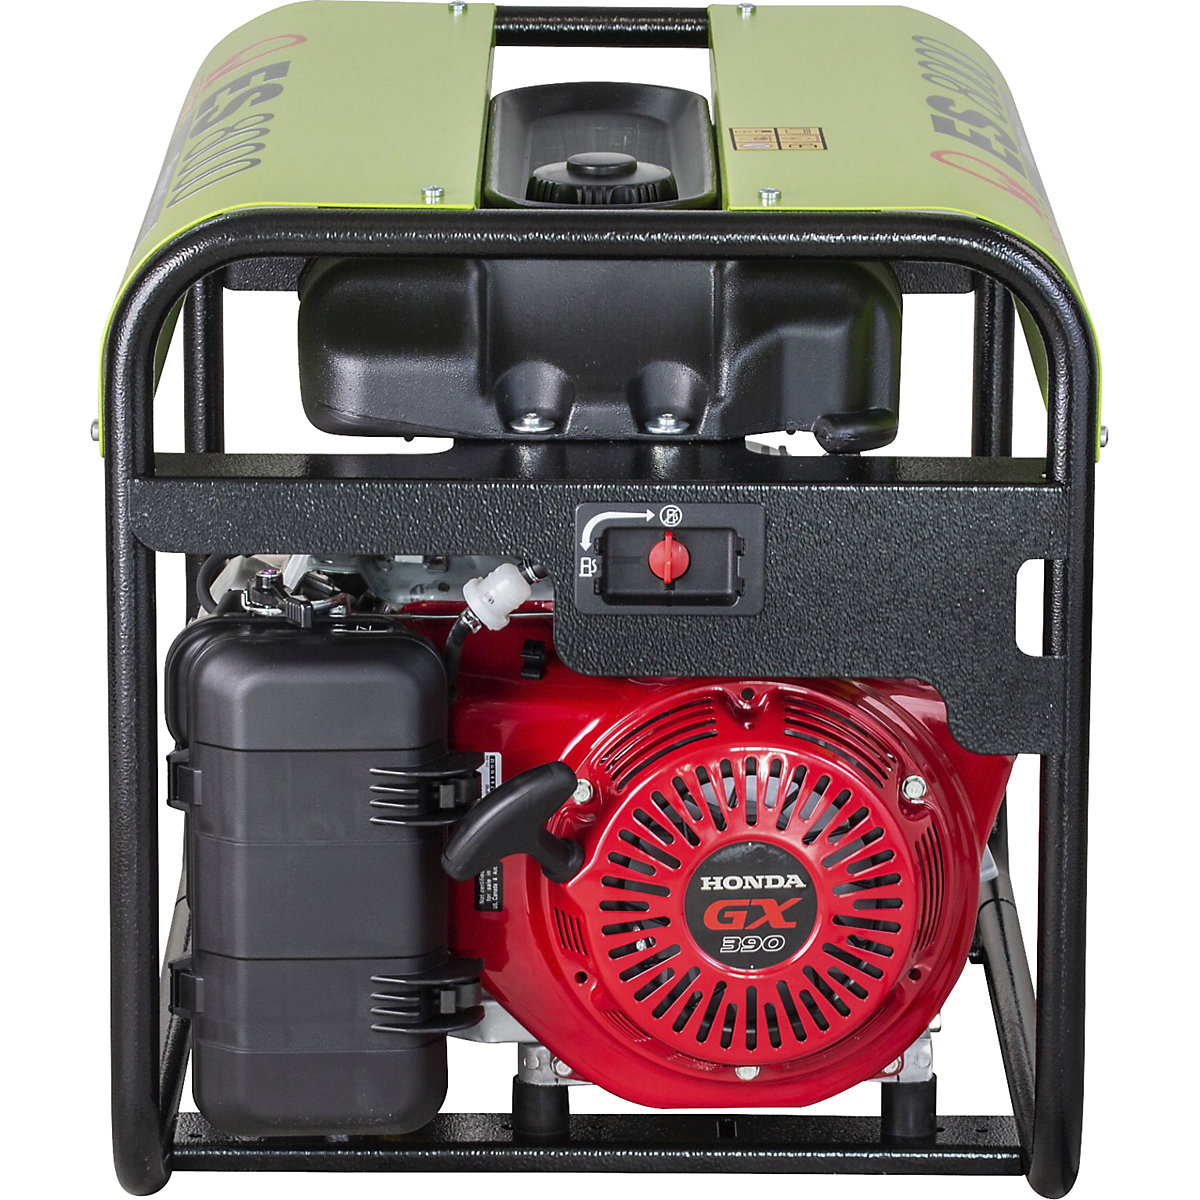 Generador eléctrico serie ES – gasolina, 400 / 230 V – Pramac (Imagen del producto 3)-2